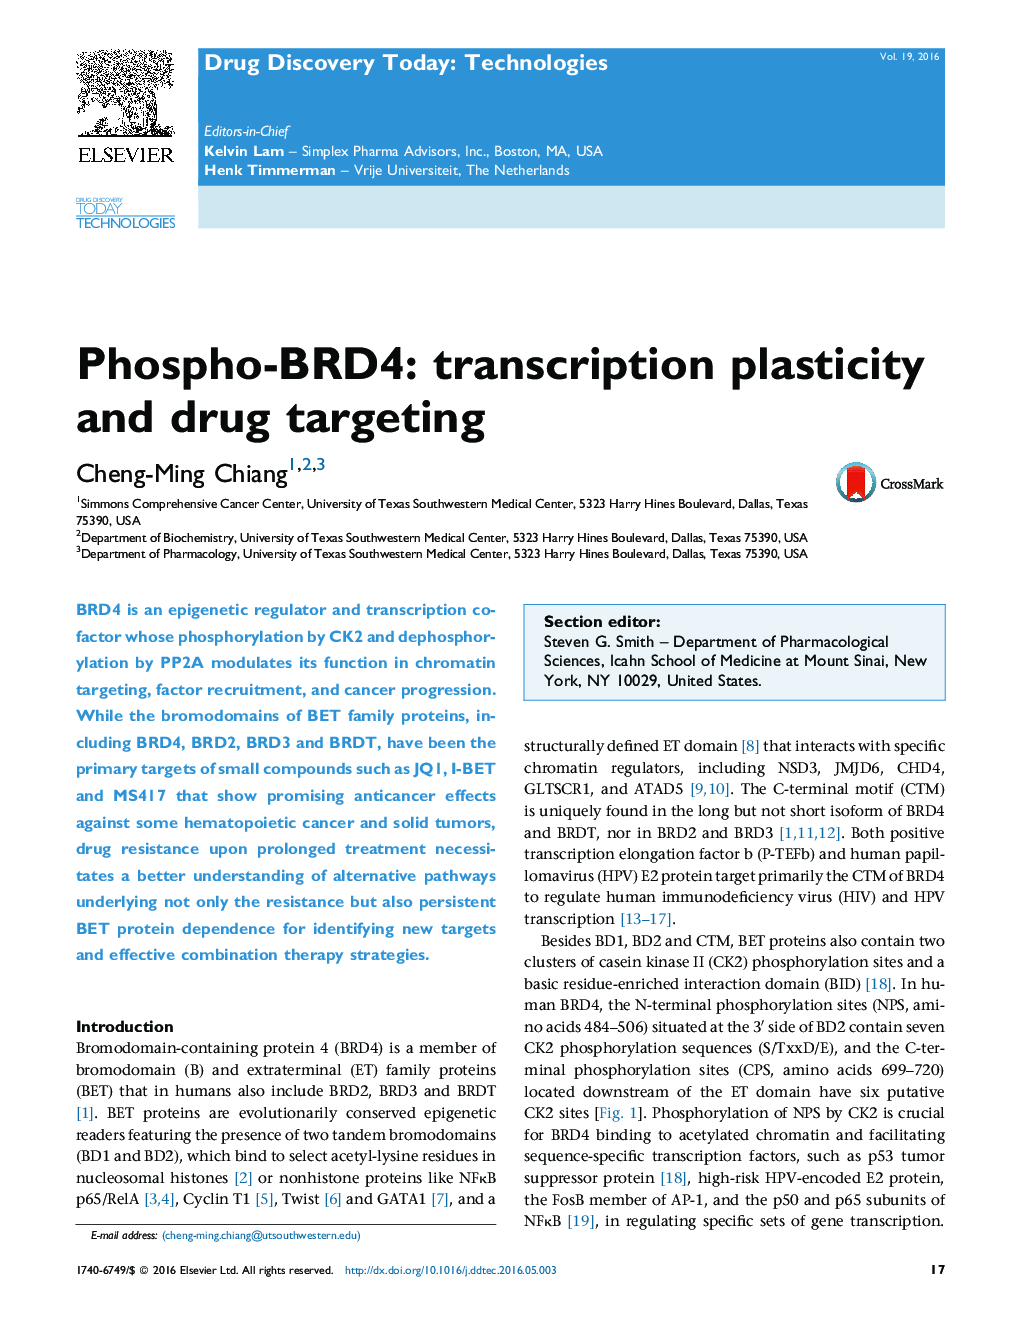 Phospho-BRD4: transcription plasticity and drug targeting